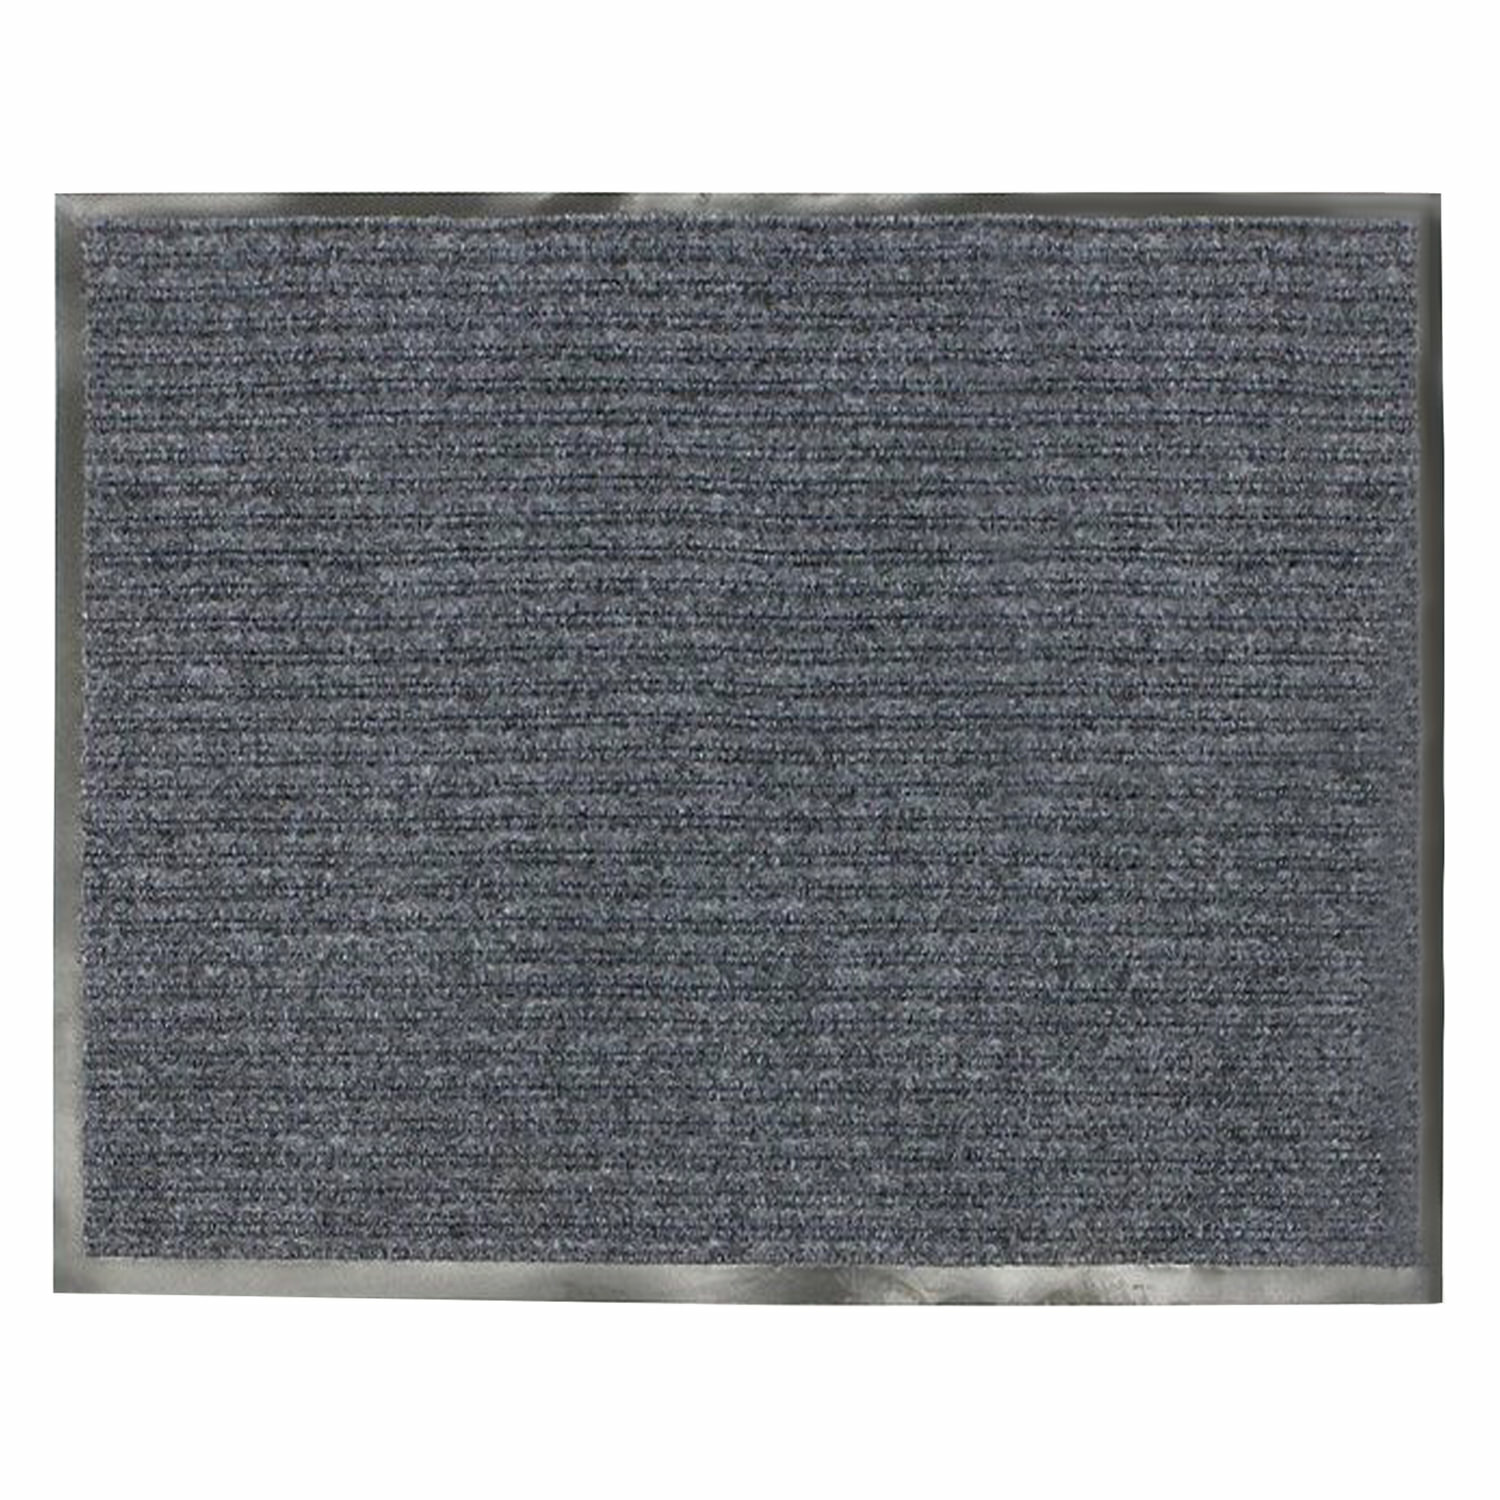 Коврик входной ворсовый влаго-грязезащитный 120×150 см, толщина 7 мм, серый, VORTEX, 22099, 24201 - фотография № 1